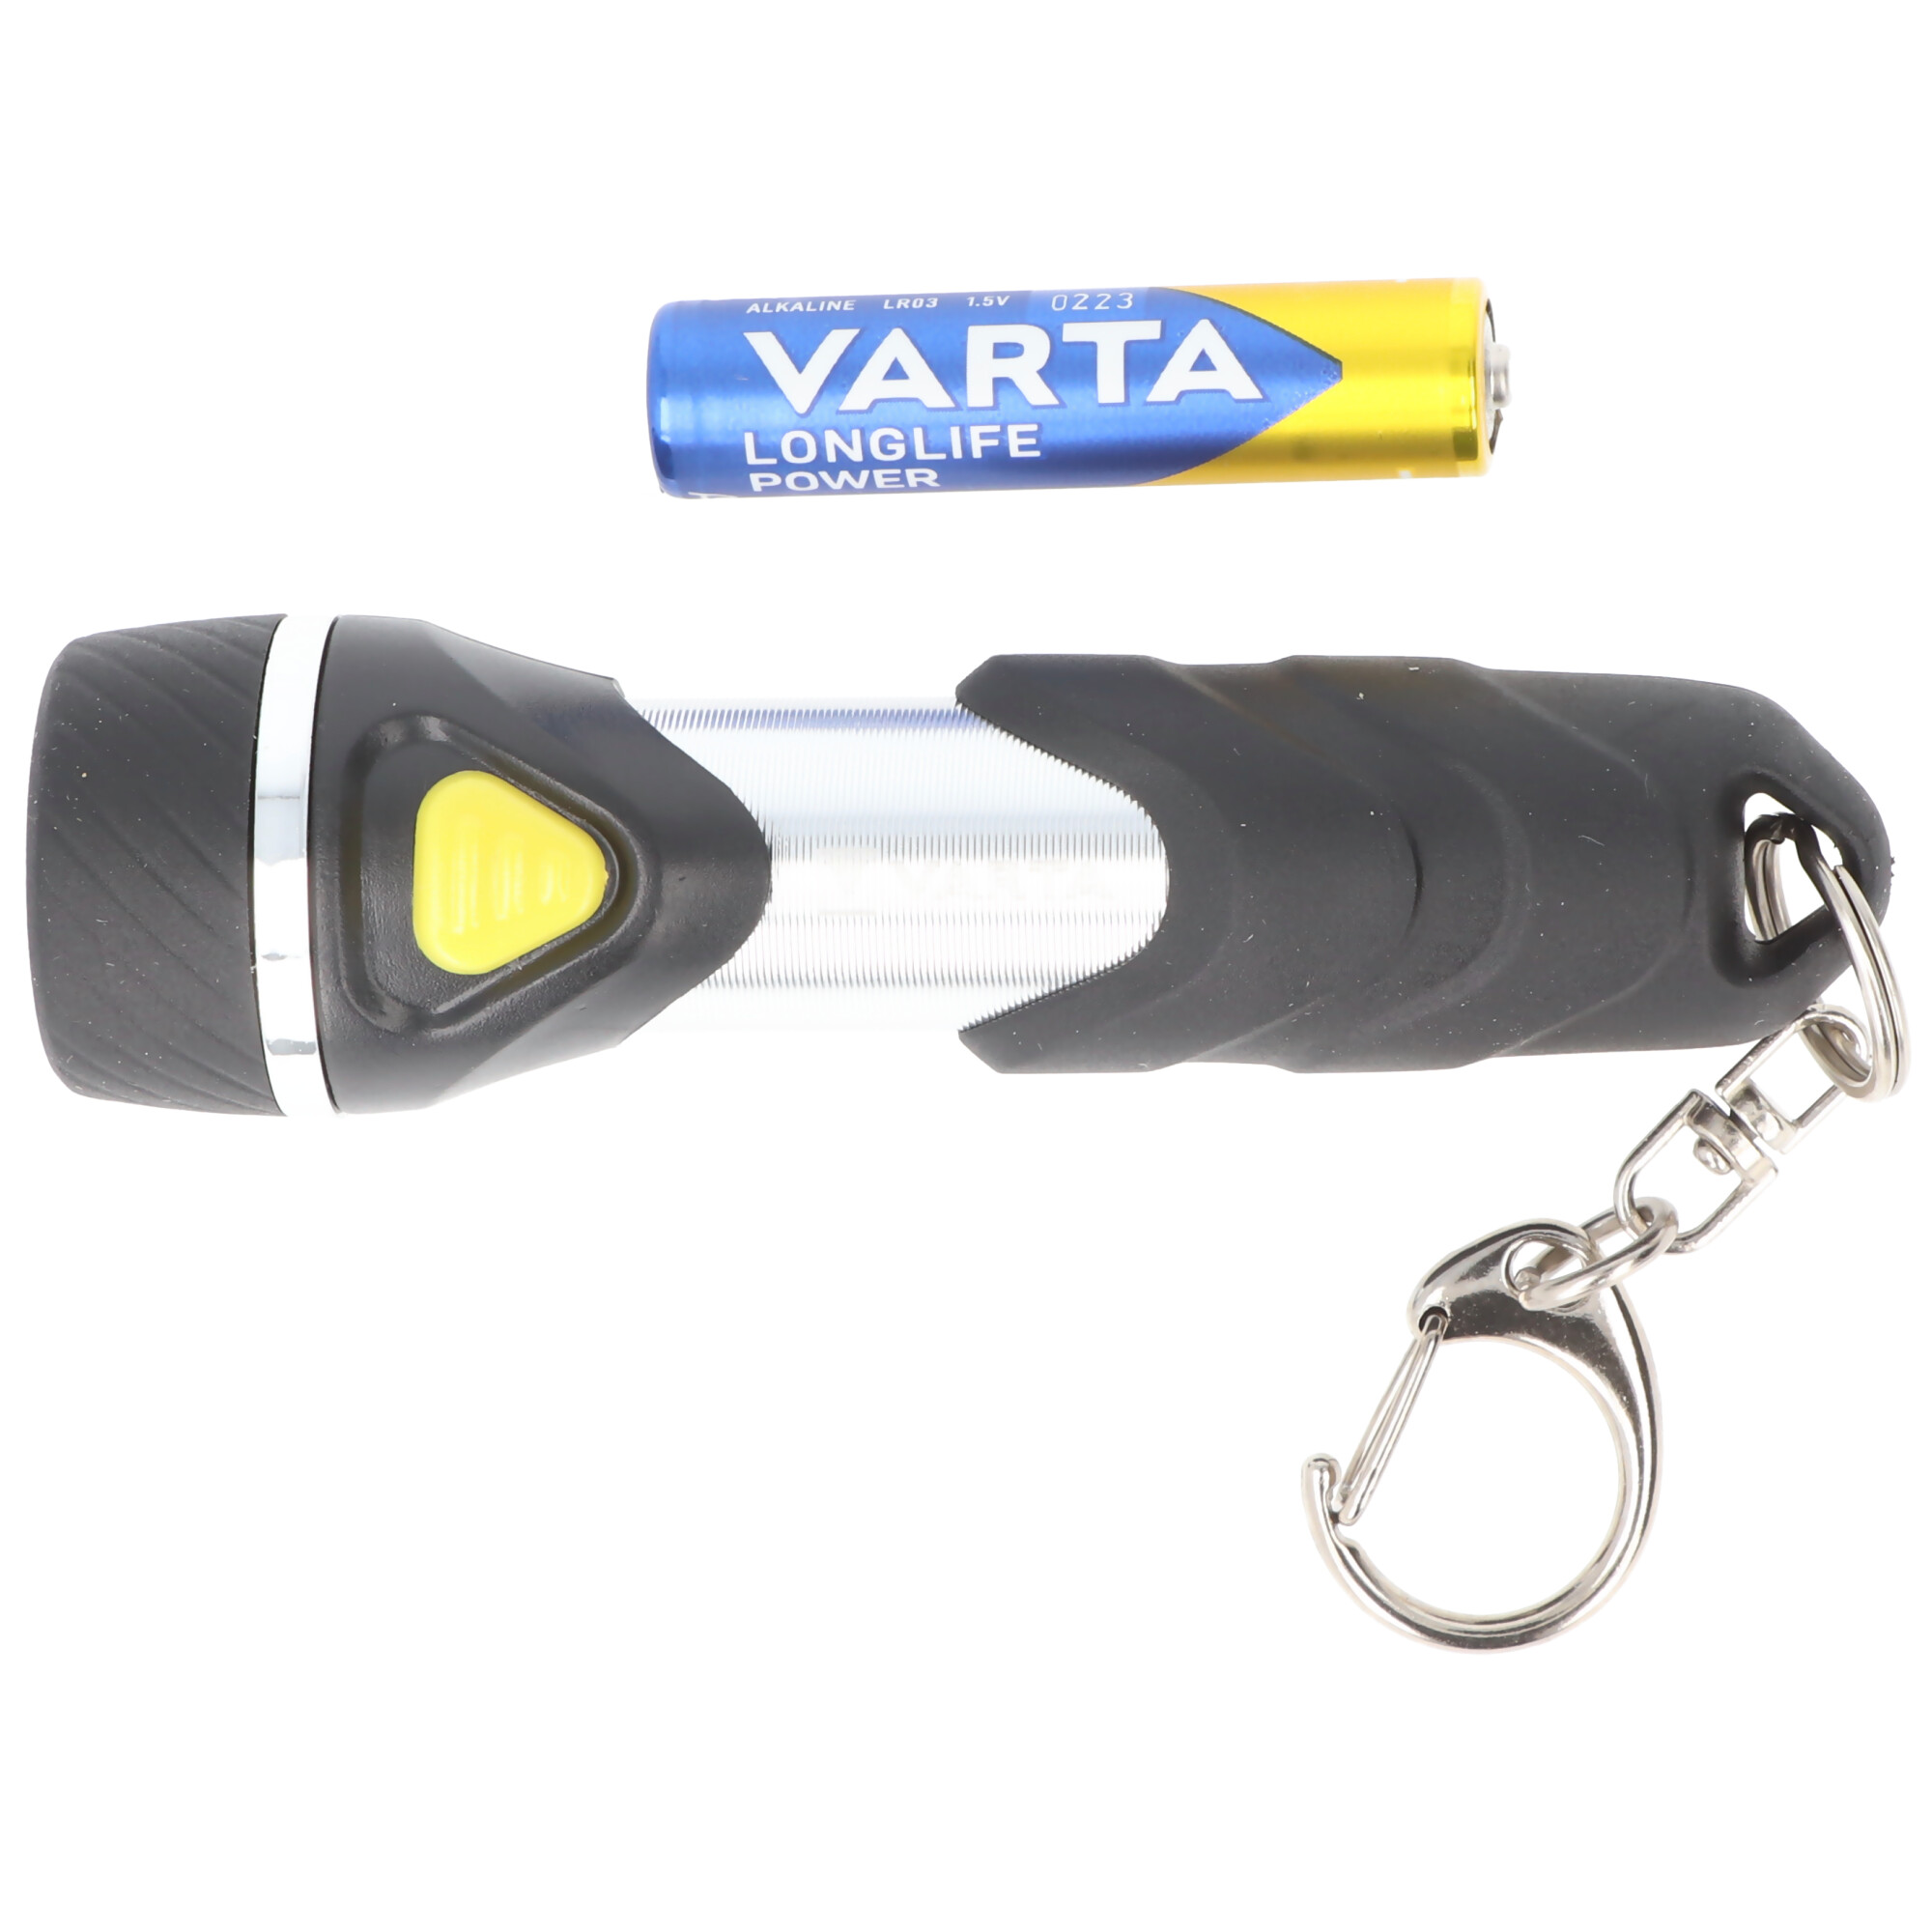 Varta LED Taschenlampe Day Light, Key Chain 12lm, inkl. 1x Batterie Alkaline AAA, Retail Blister